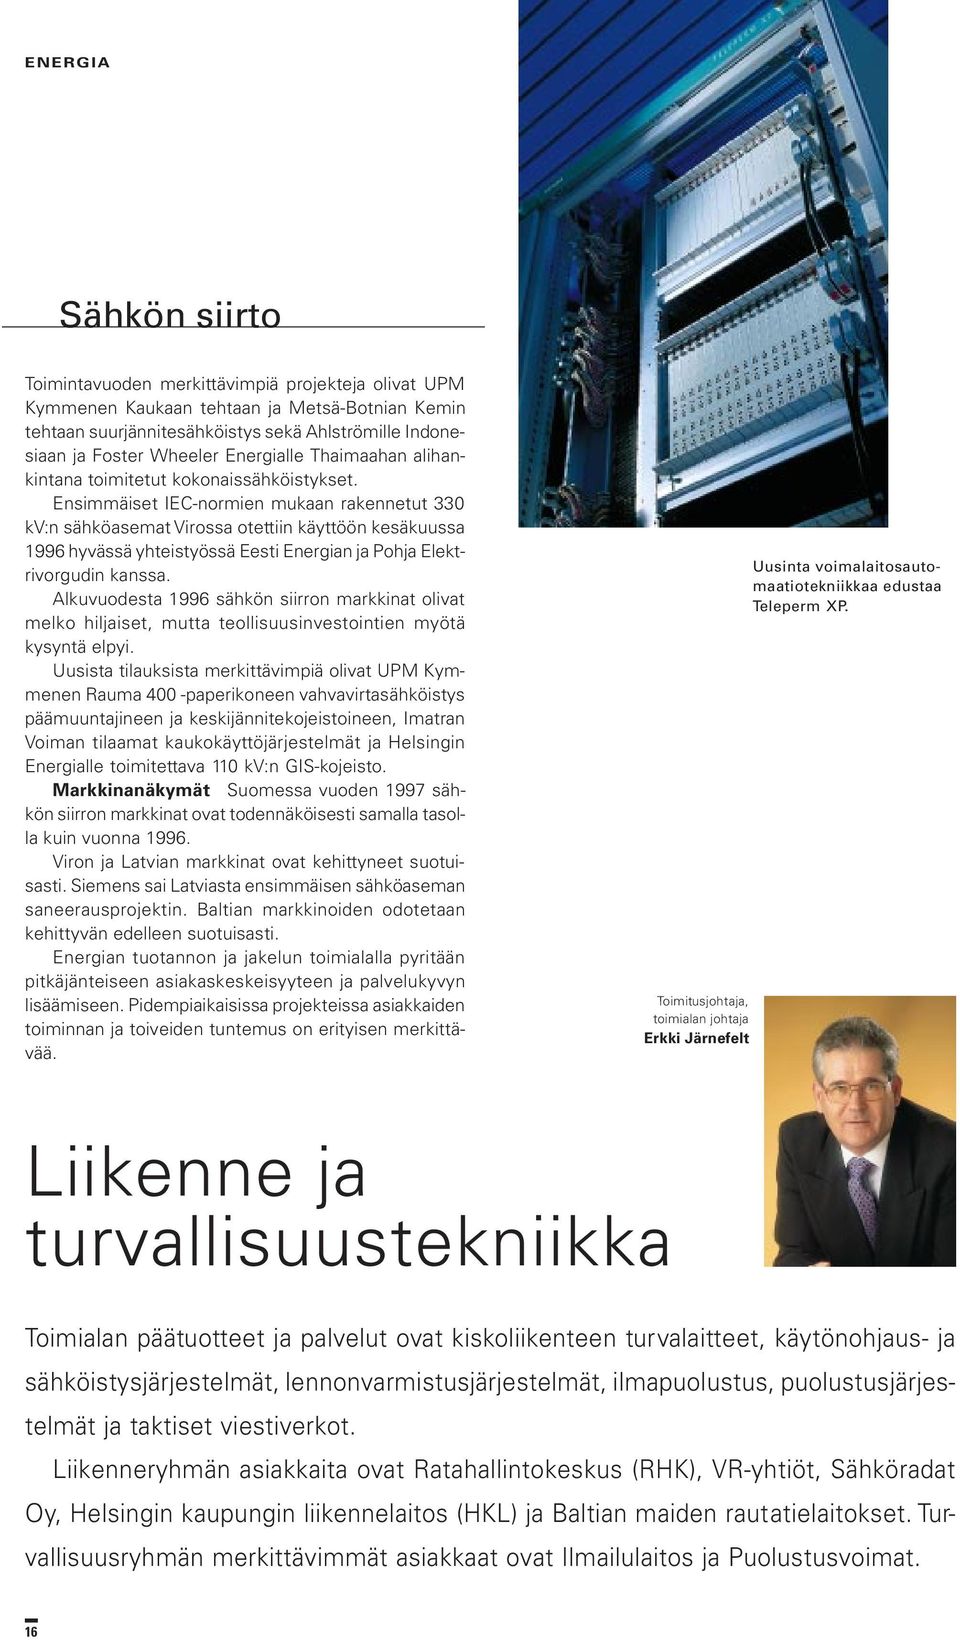 Ensimmäiset IEC-normien mukaan rakennetut 330 kv:n sähköasemat Virossa otettiin käyttöön kesäkuussa 1996 hyvässä yhteistyössä Eesti Energian ja Pohja Elektrivorgudin kanssa.